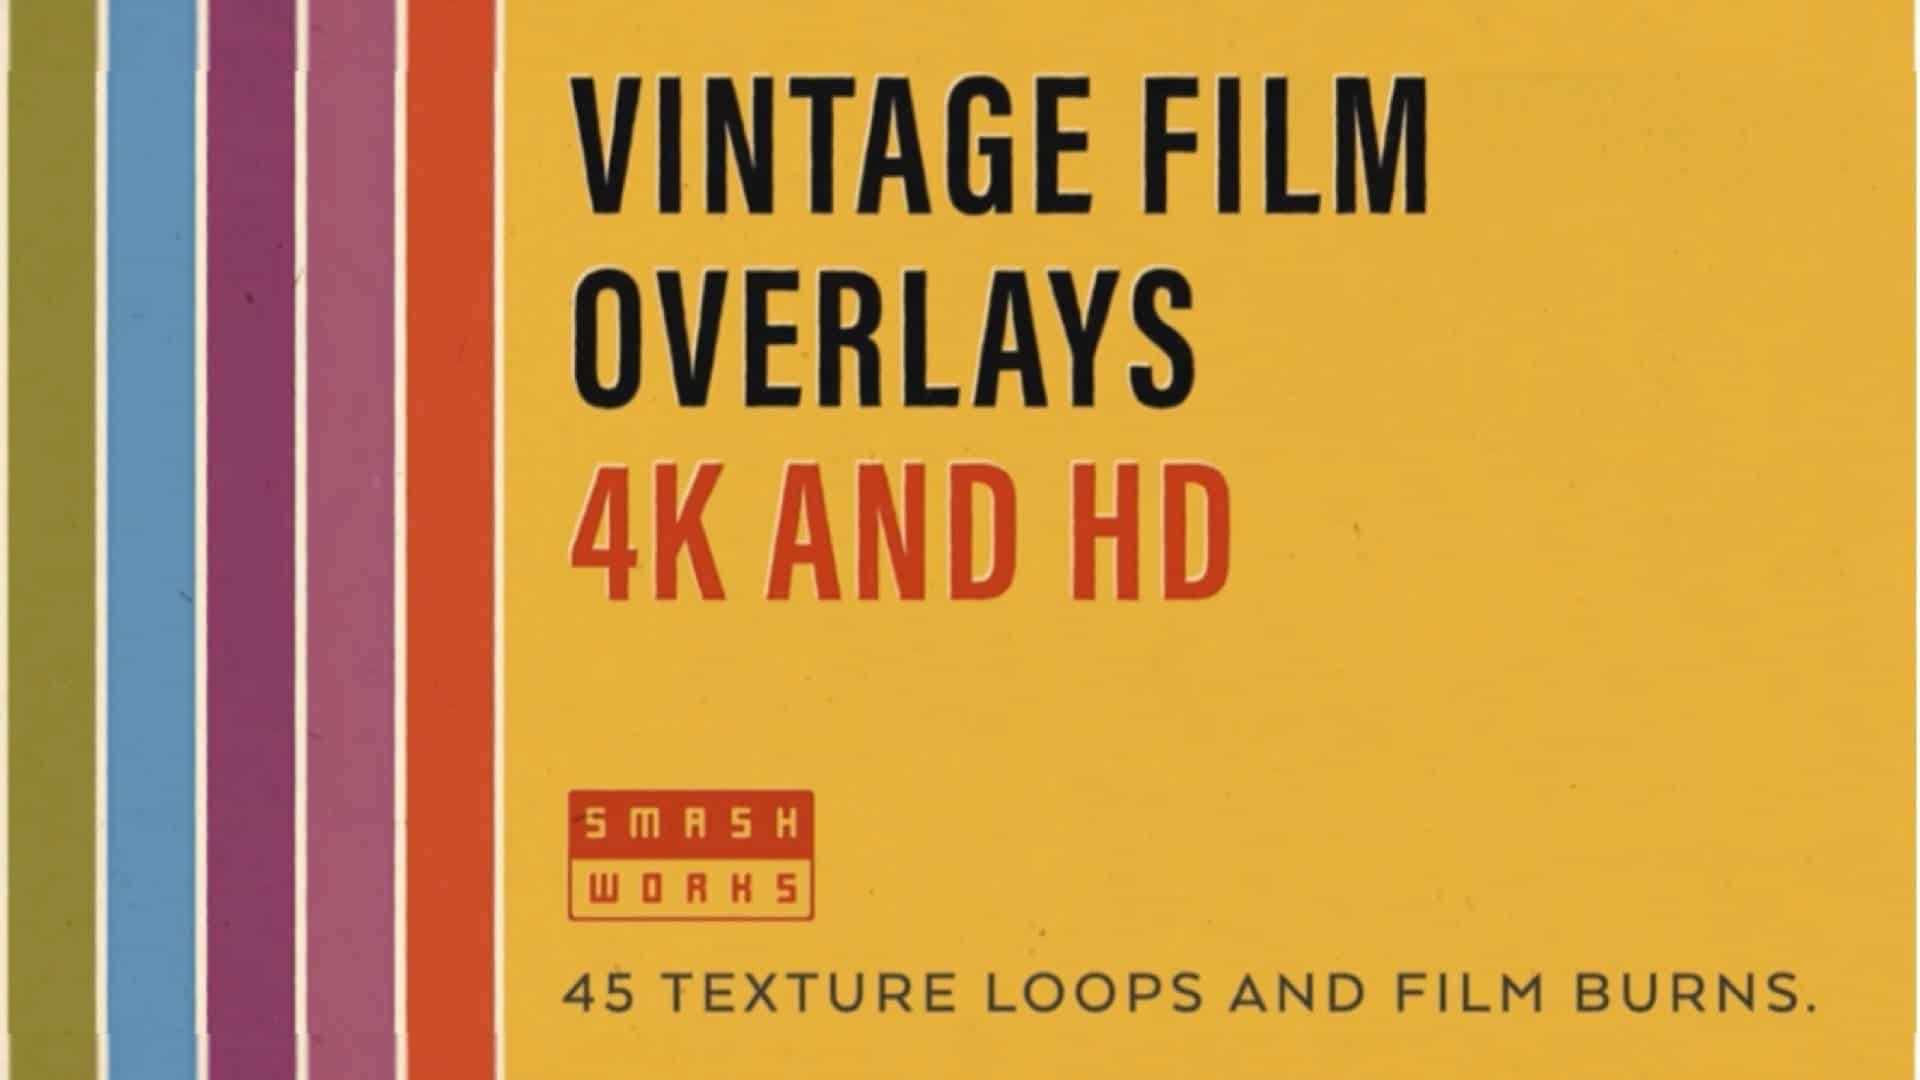 Vintage Film Overlays 4K & HD<